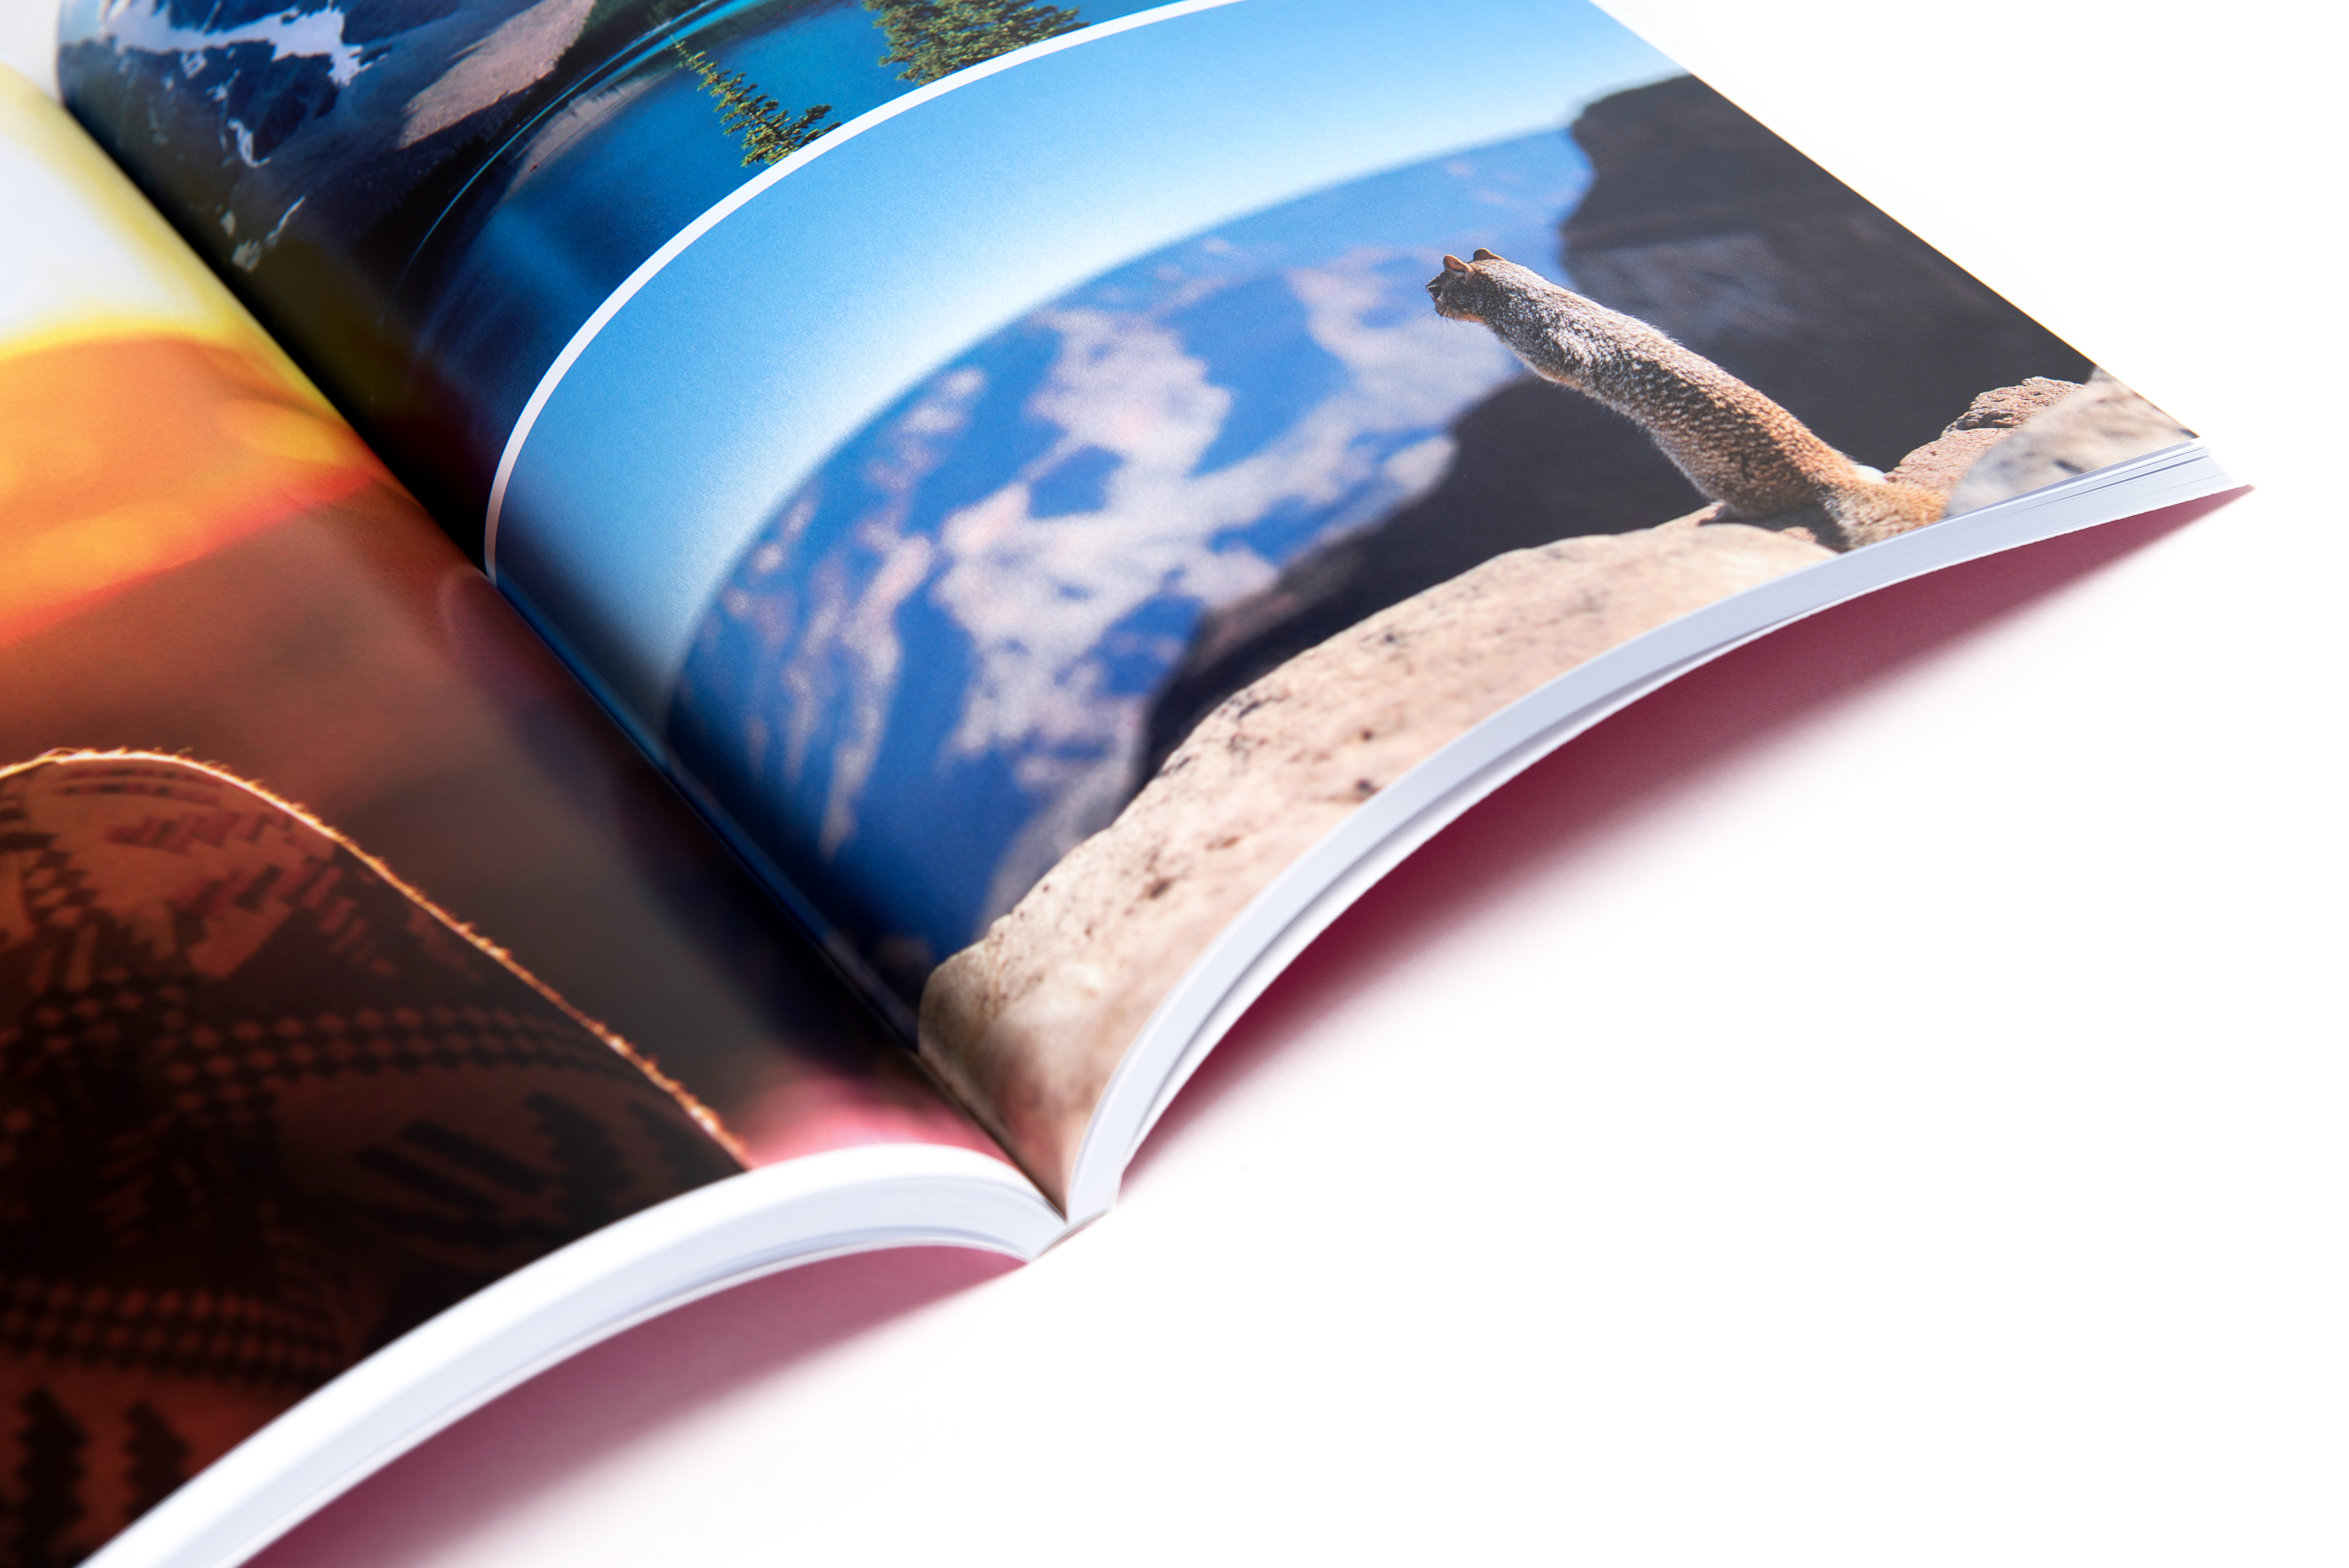 De onze Geurig Numeriek Fotoalbum: goedkoop adrukken en inbinden | Print&Bind